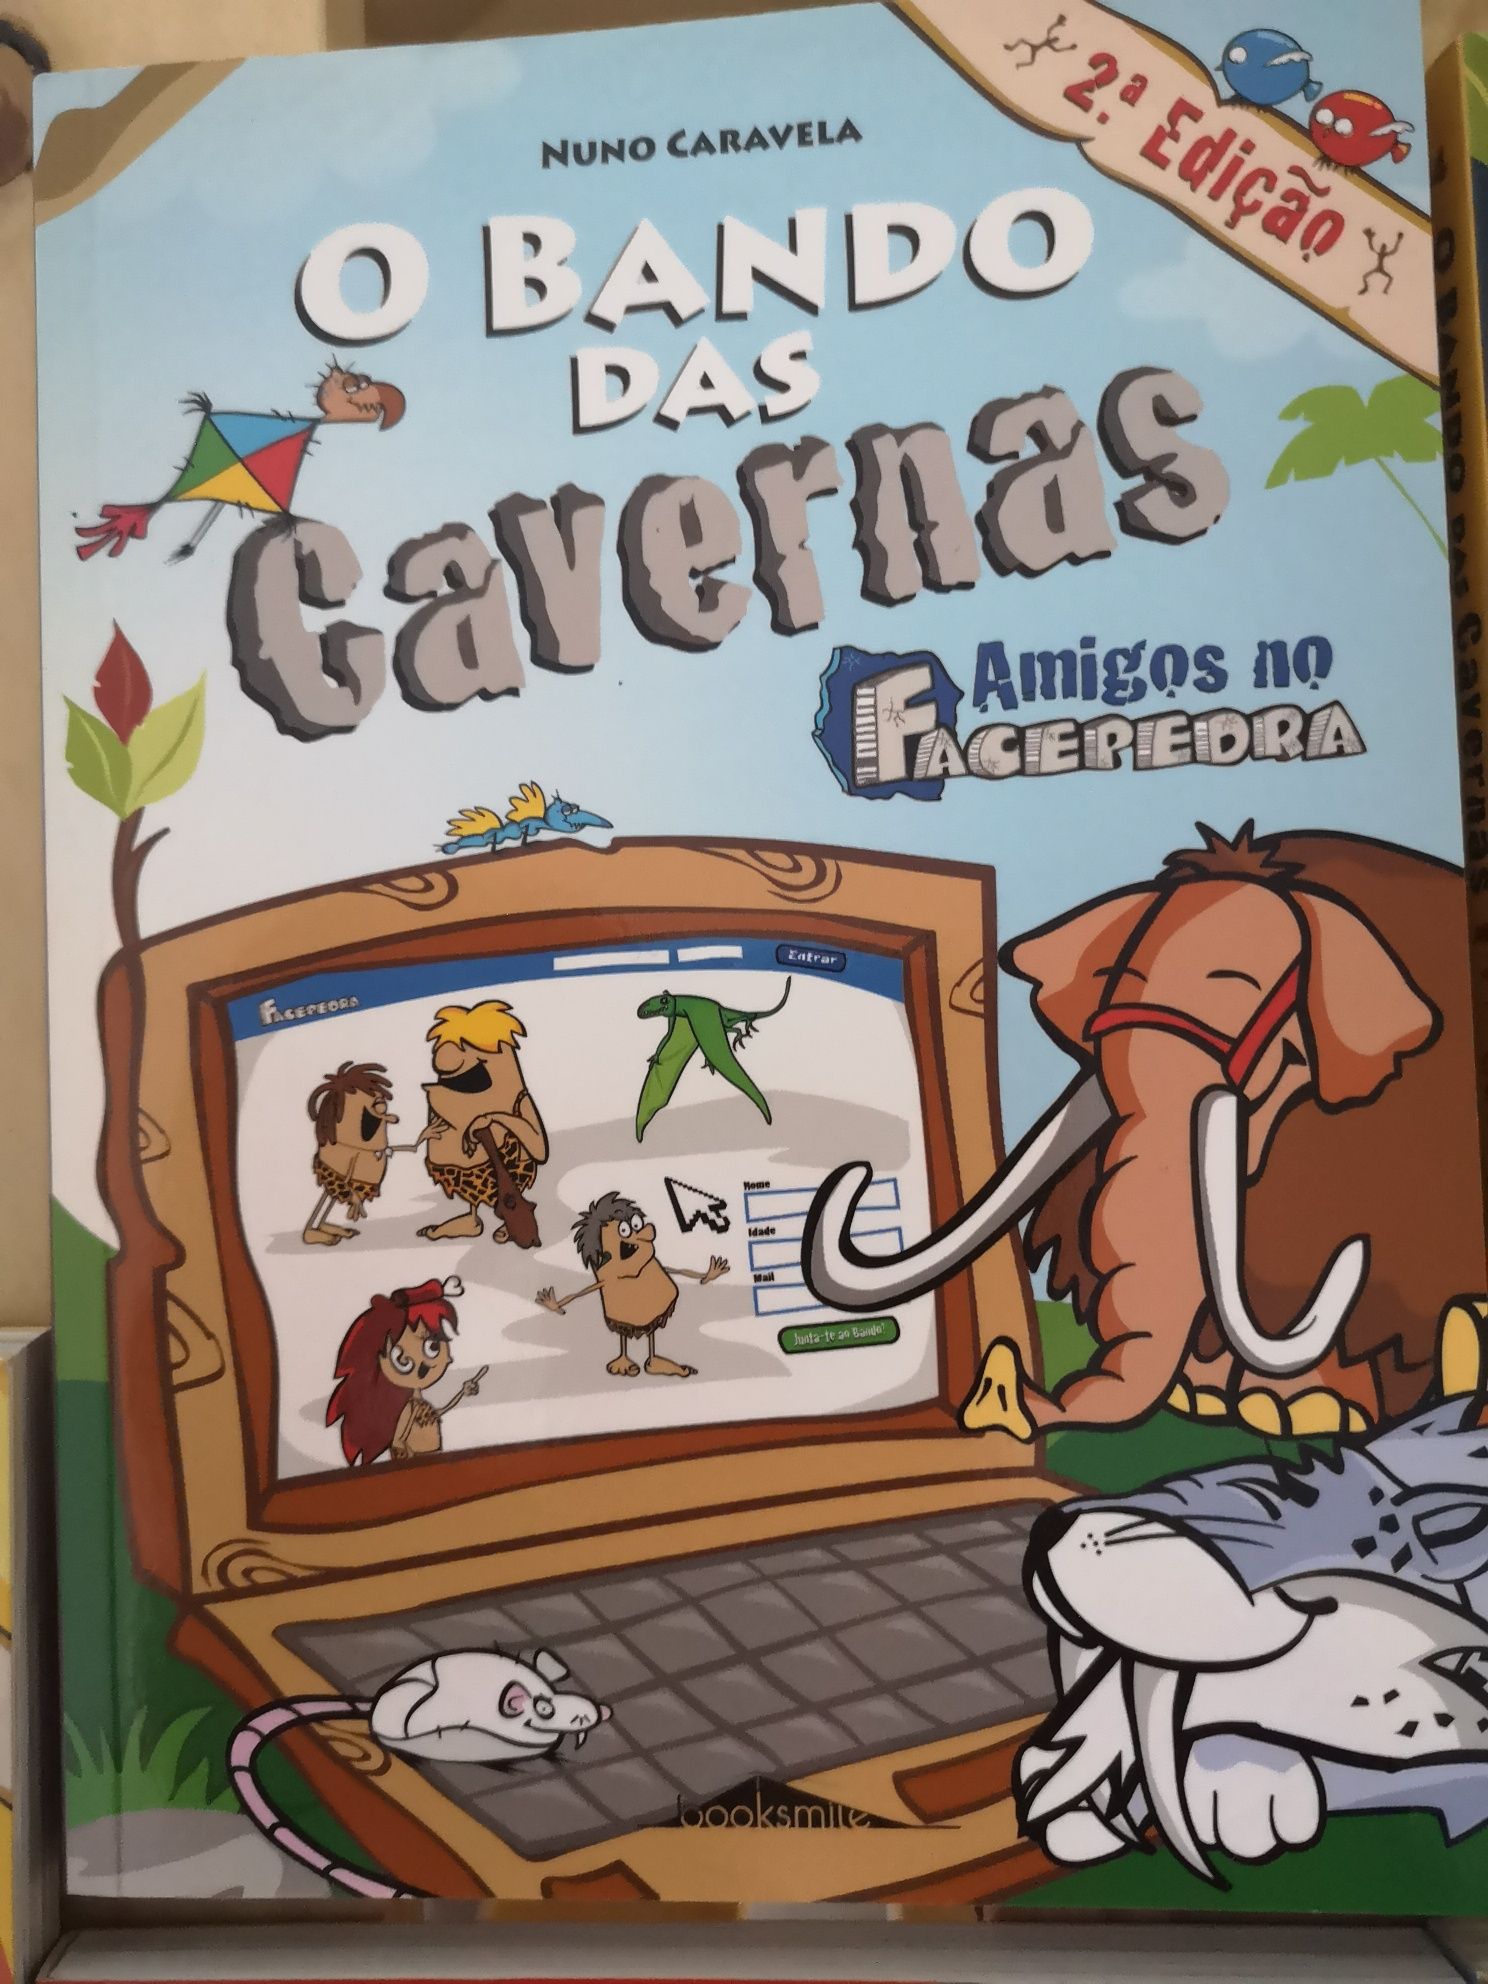 Vendo livros Bando das Cavernas